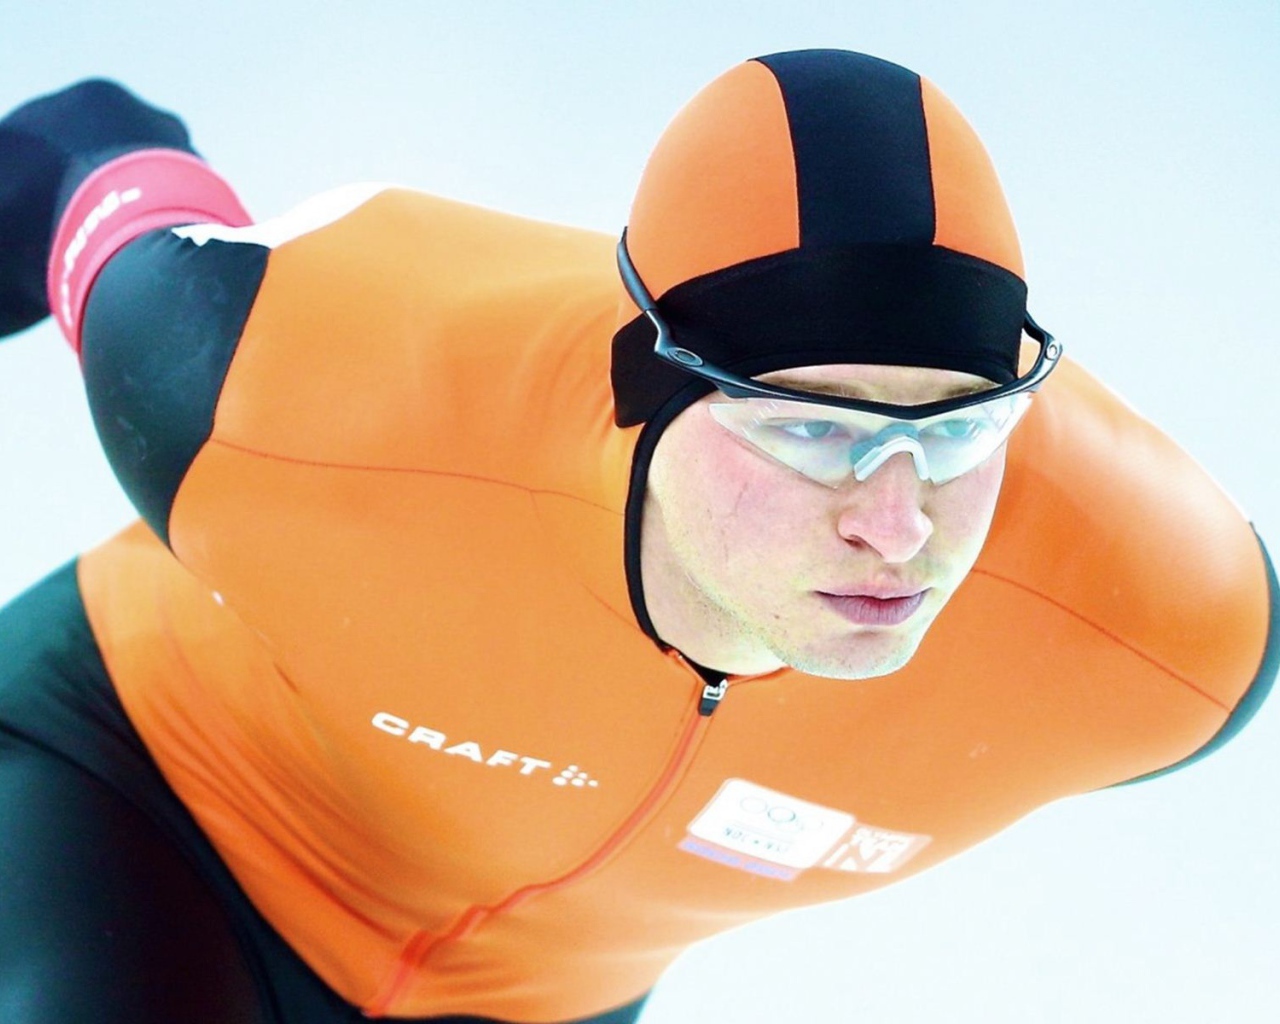 Обладатель серебряной медали в дисциплине скоростной бег на коньках Ян Блокхёйсен на олимпиаде из Нидерландов